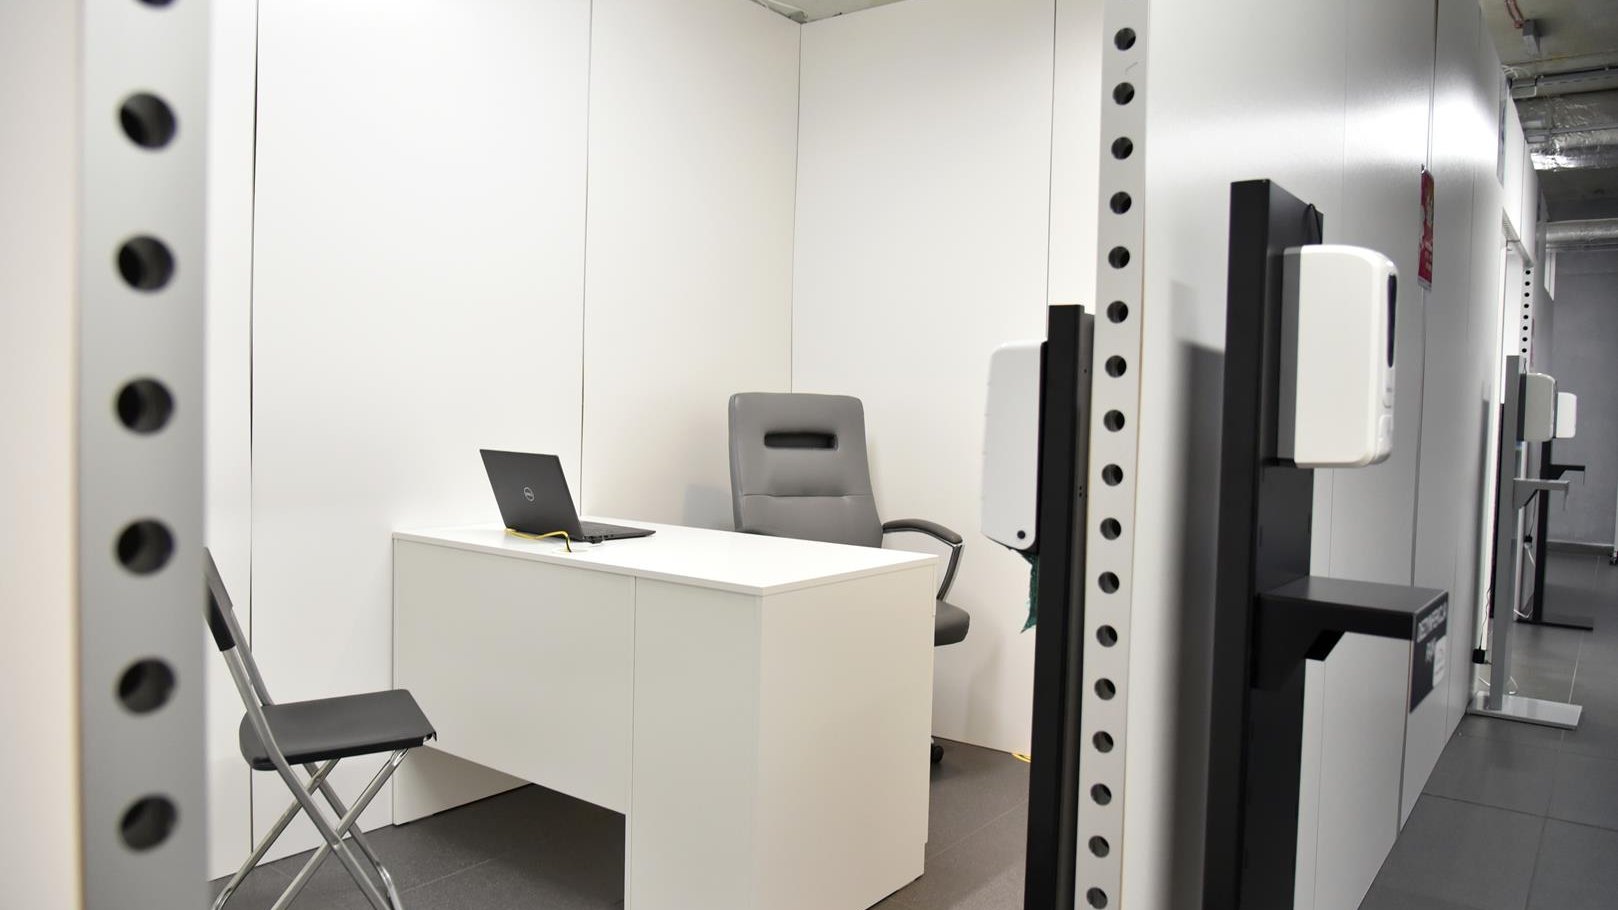 Wnętrze punktu, gabinet, w którym przeprowadzana będzie kwalifikacja: białe biurko, dwa krzesła, pojemnik z płynem do dezynfekcji